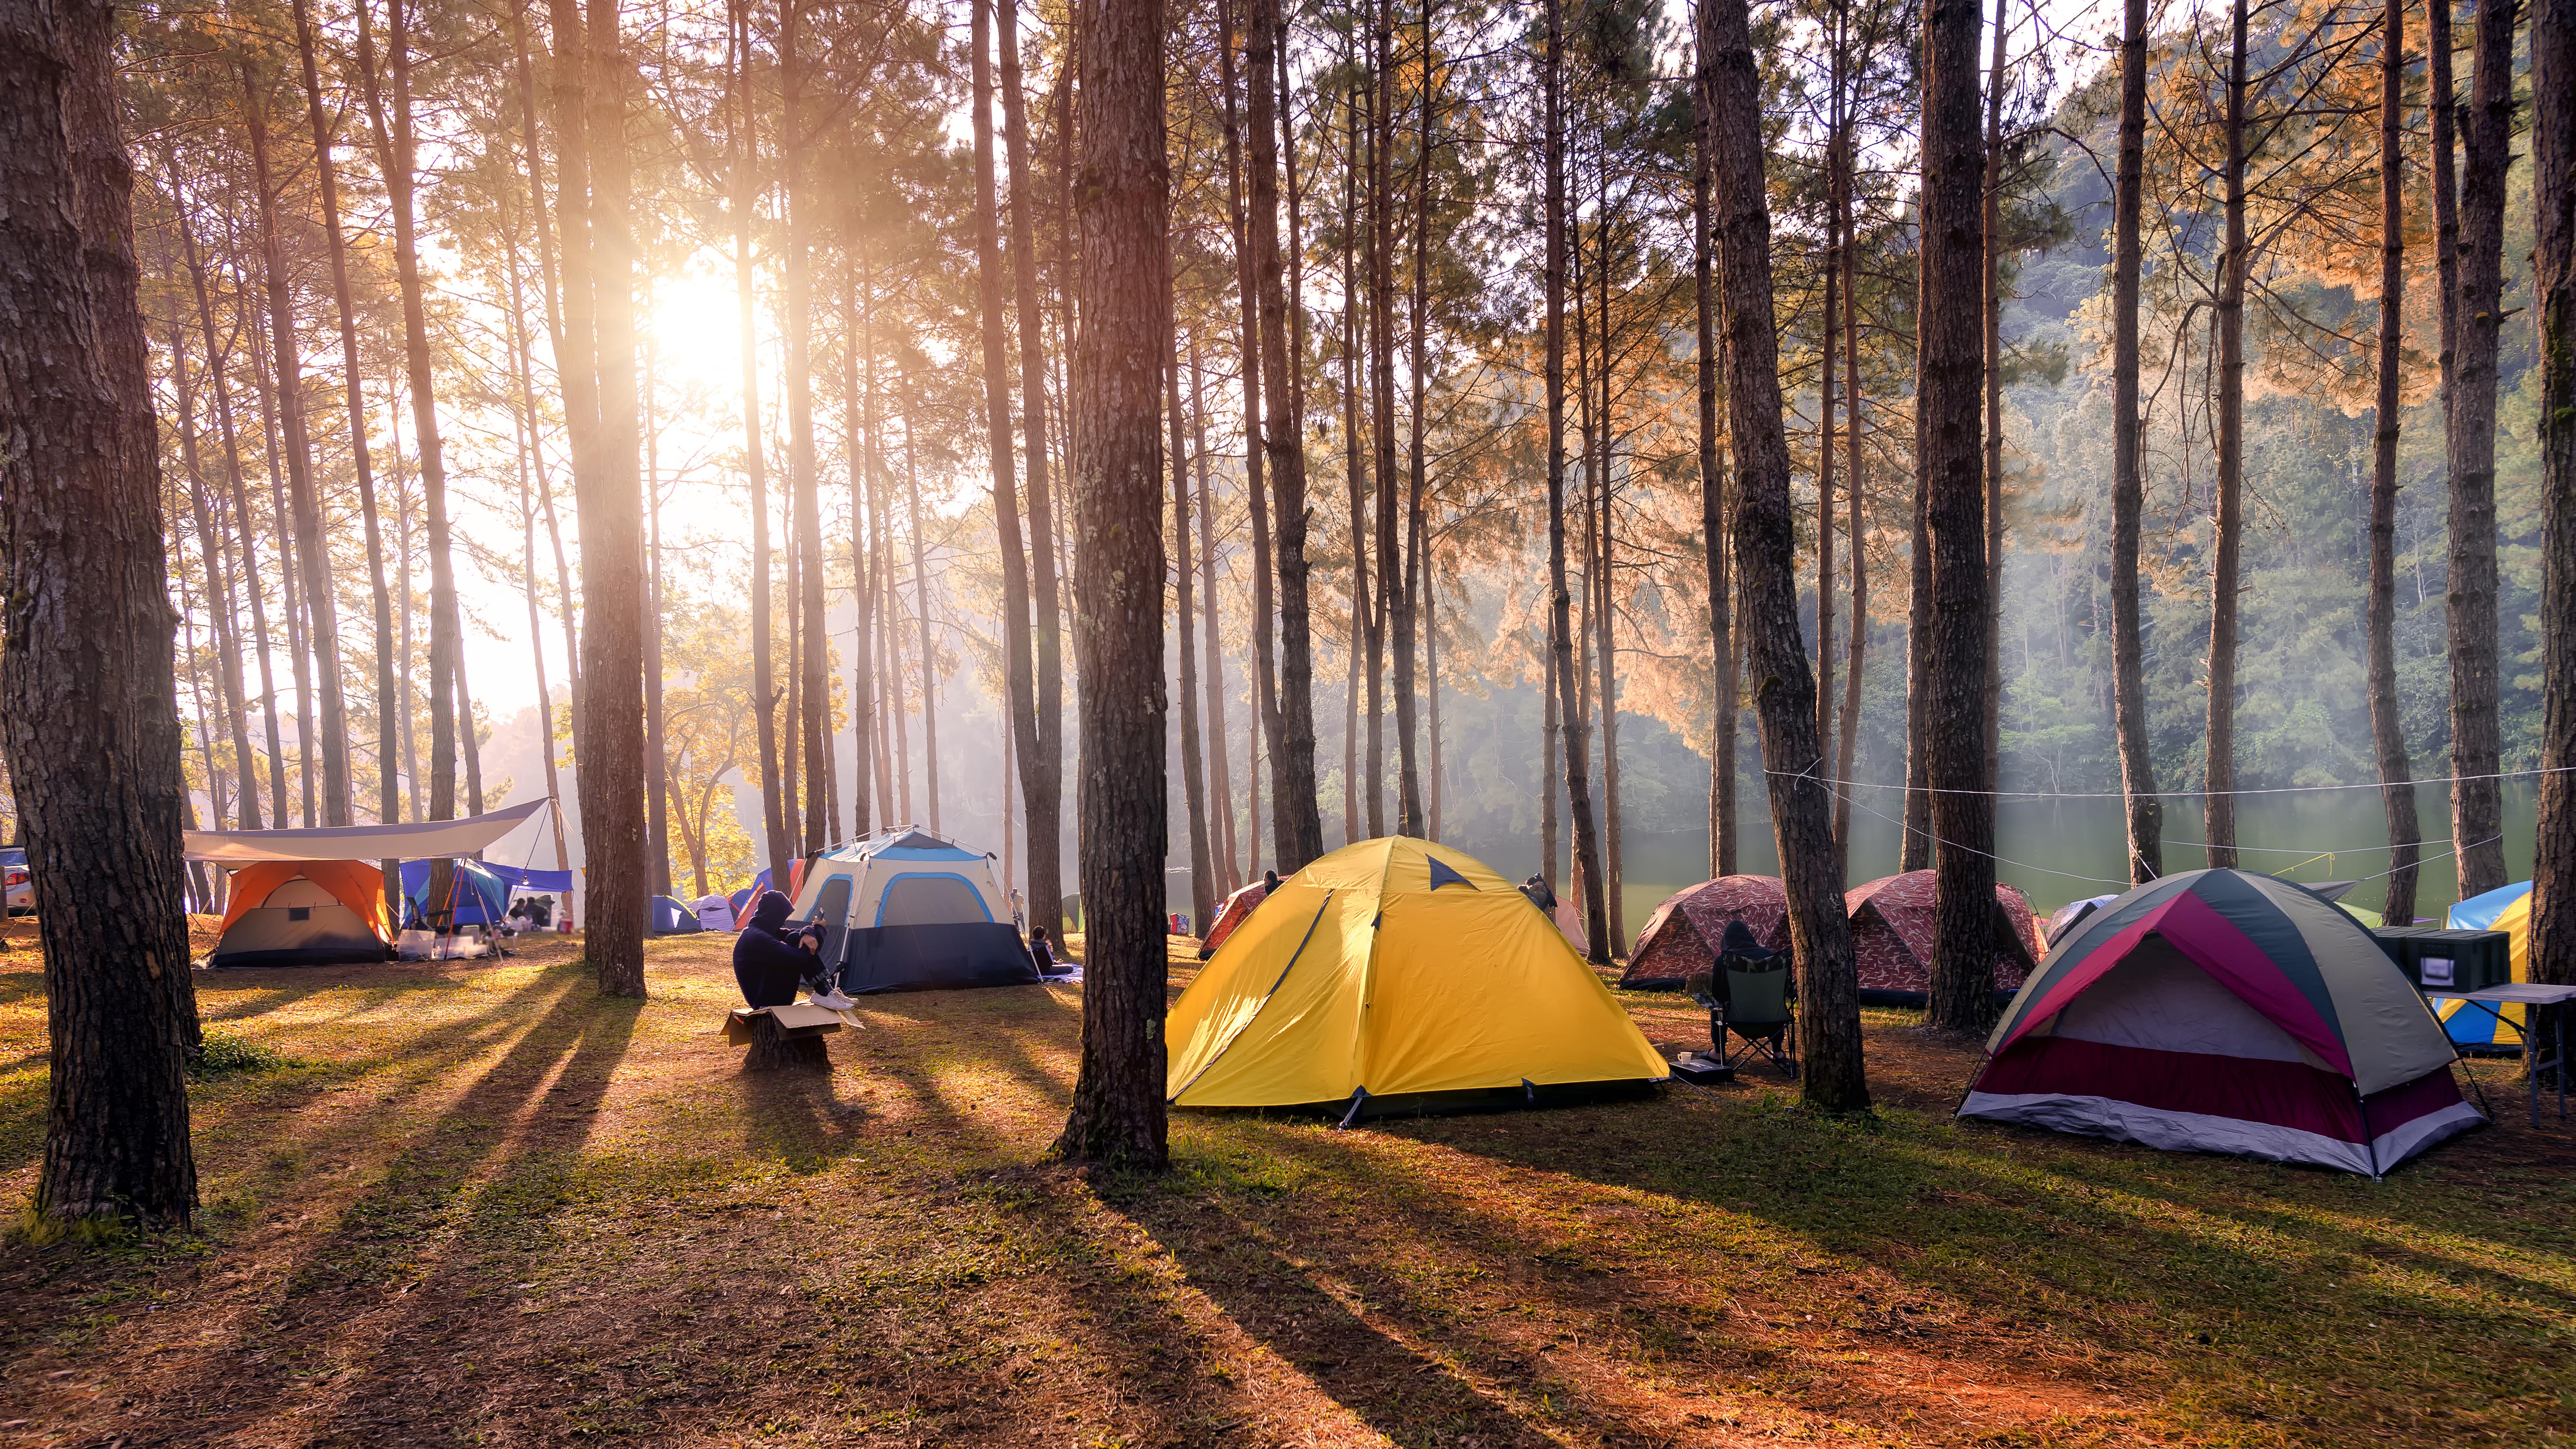 Camp фото. Автокемпинг Сосновая роща. Истра кемпинг. Глэмпинг палаточный лагерь. Палаточный кемпинг Истра.